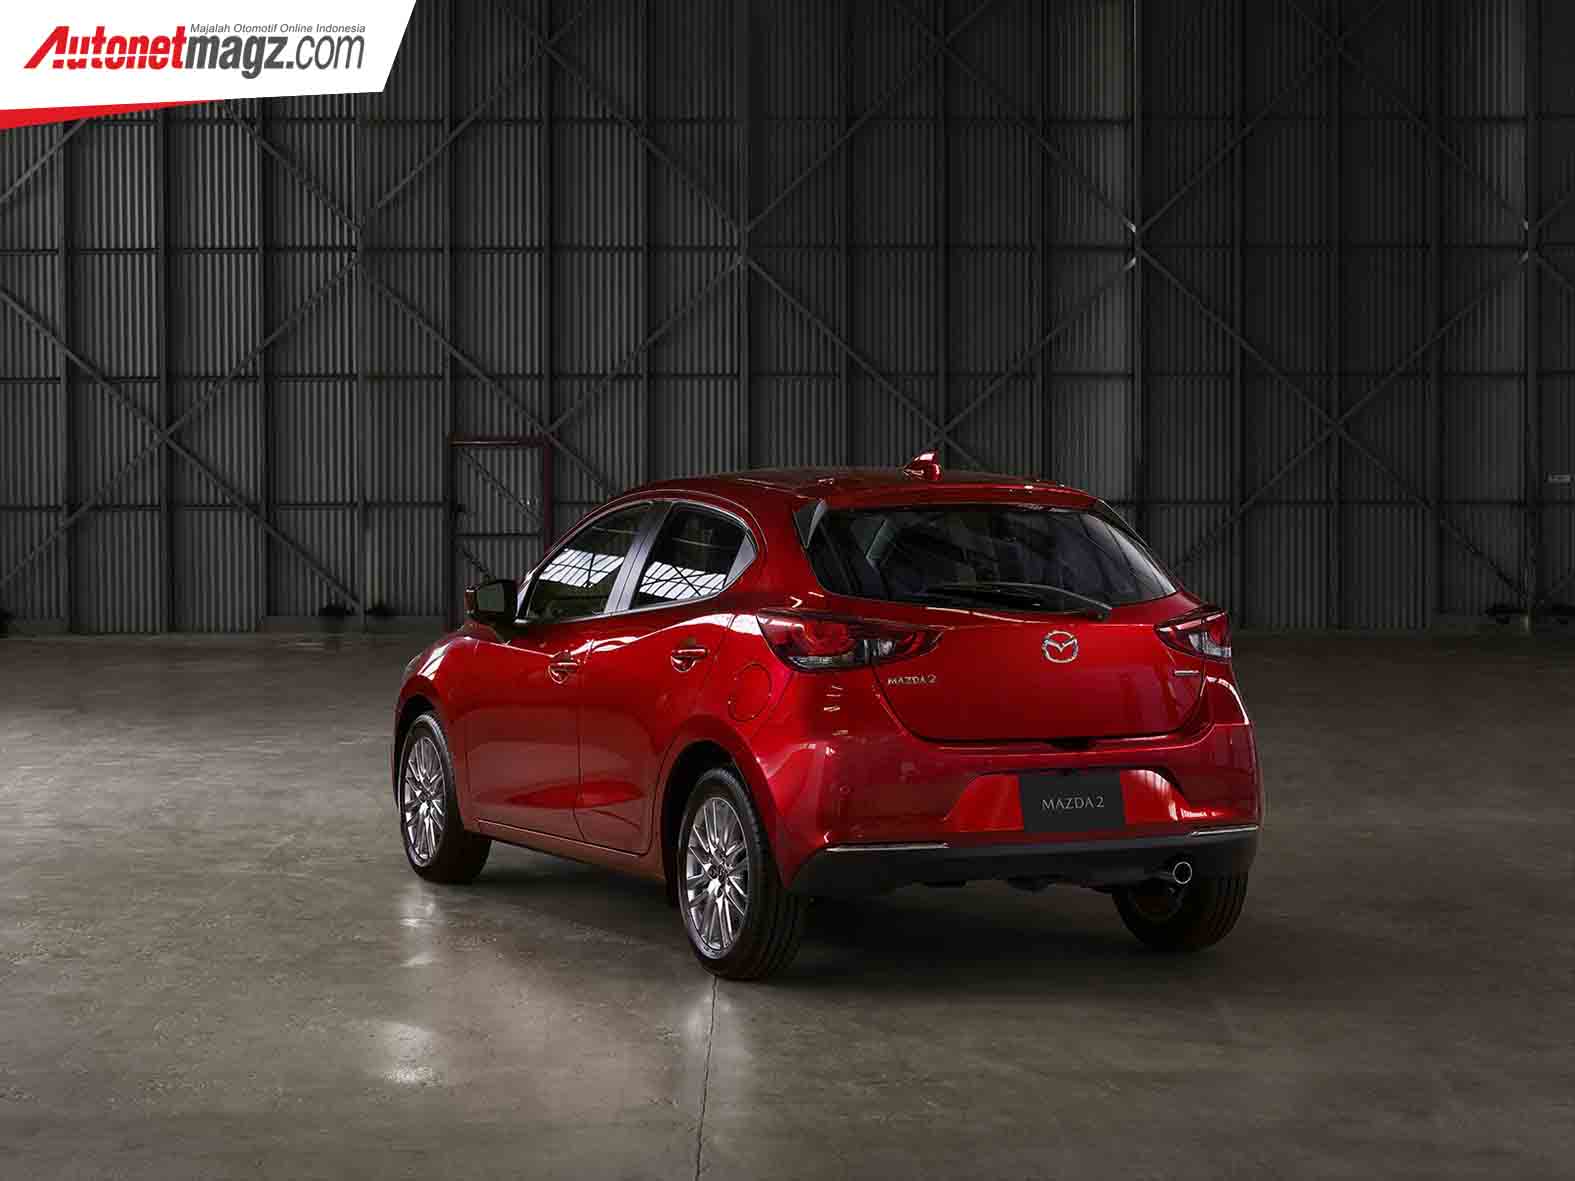 Berita, Mazda2 Facelift: Mazda2 Facelift : Pakai Desain Kodo 2.0 & Tambah Fitur!